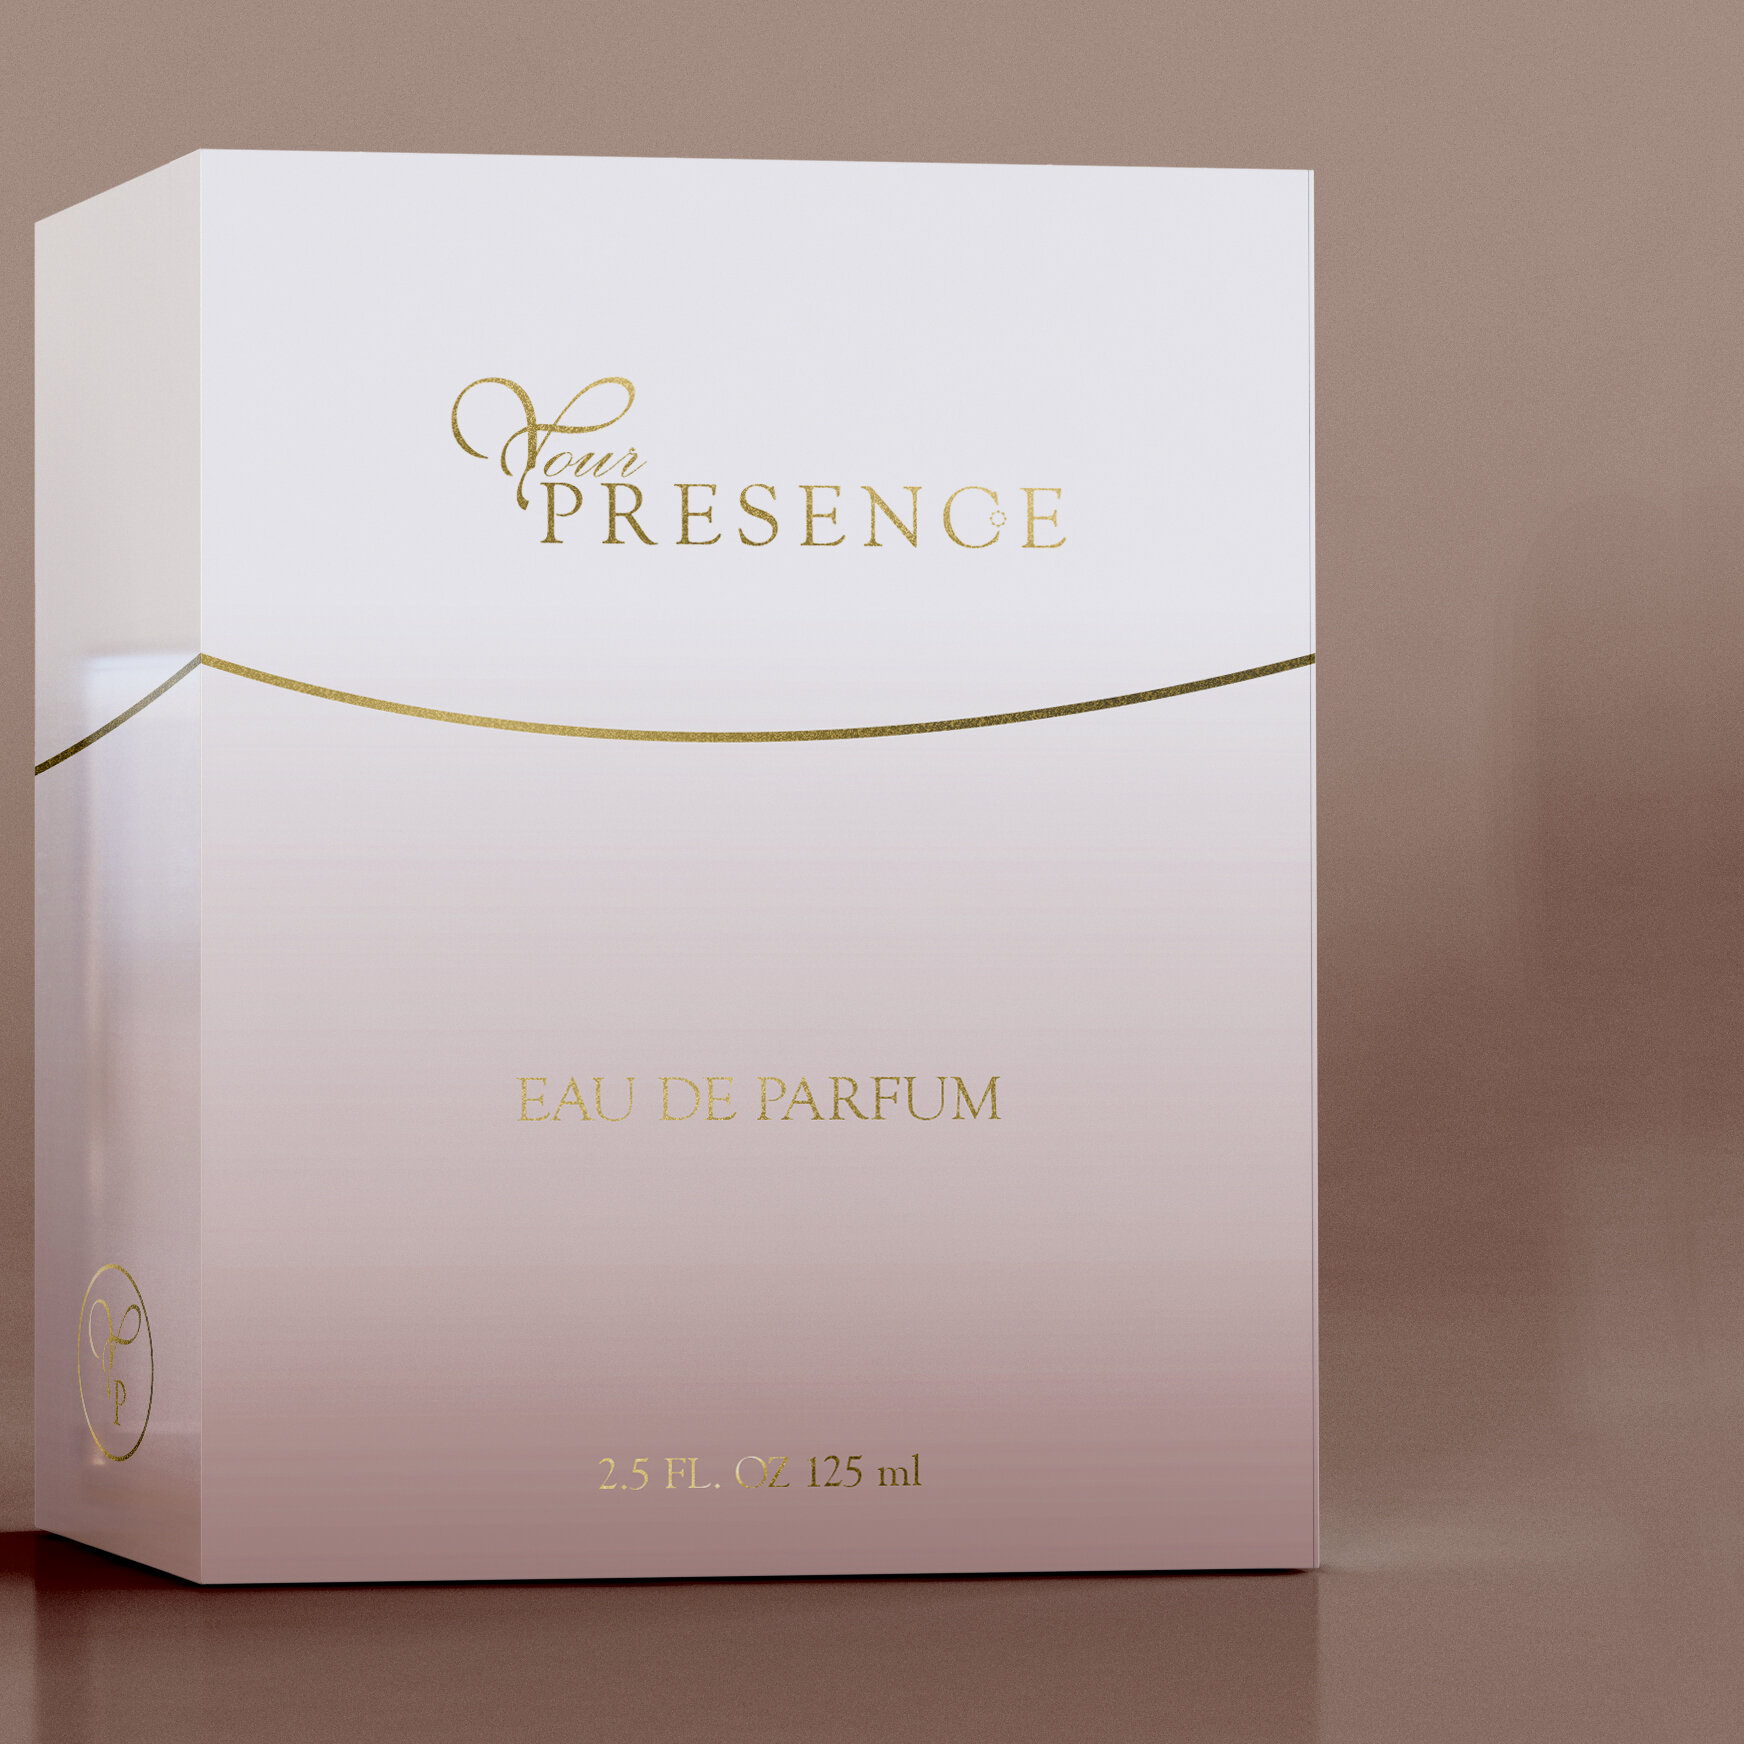 perfume-packaging-2of2.jpg